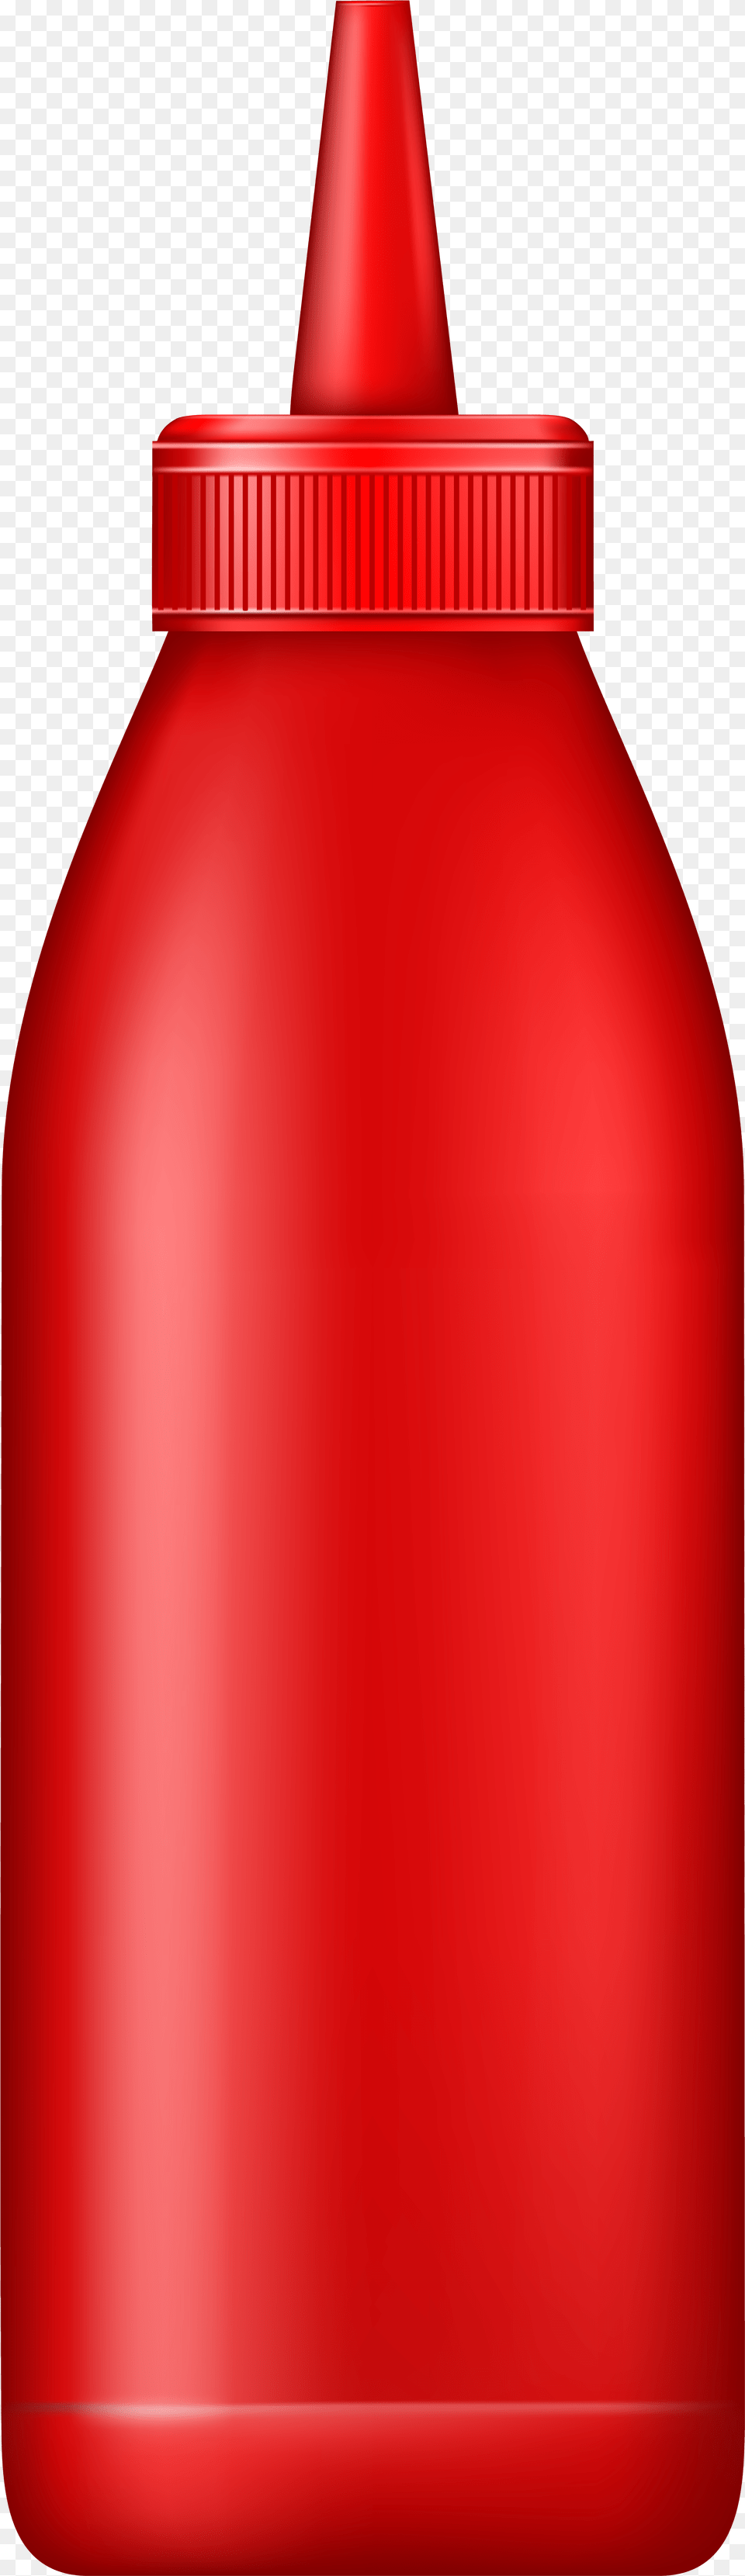 Ketchup Bottle Clip Art Skirt, Food Png